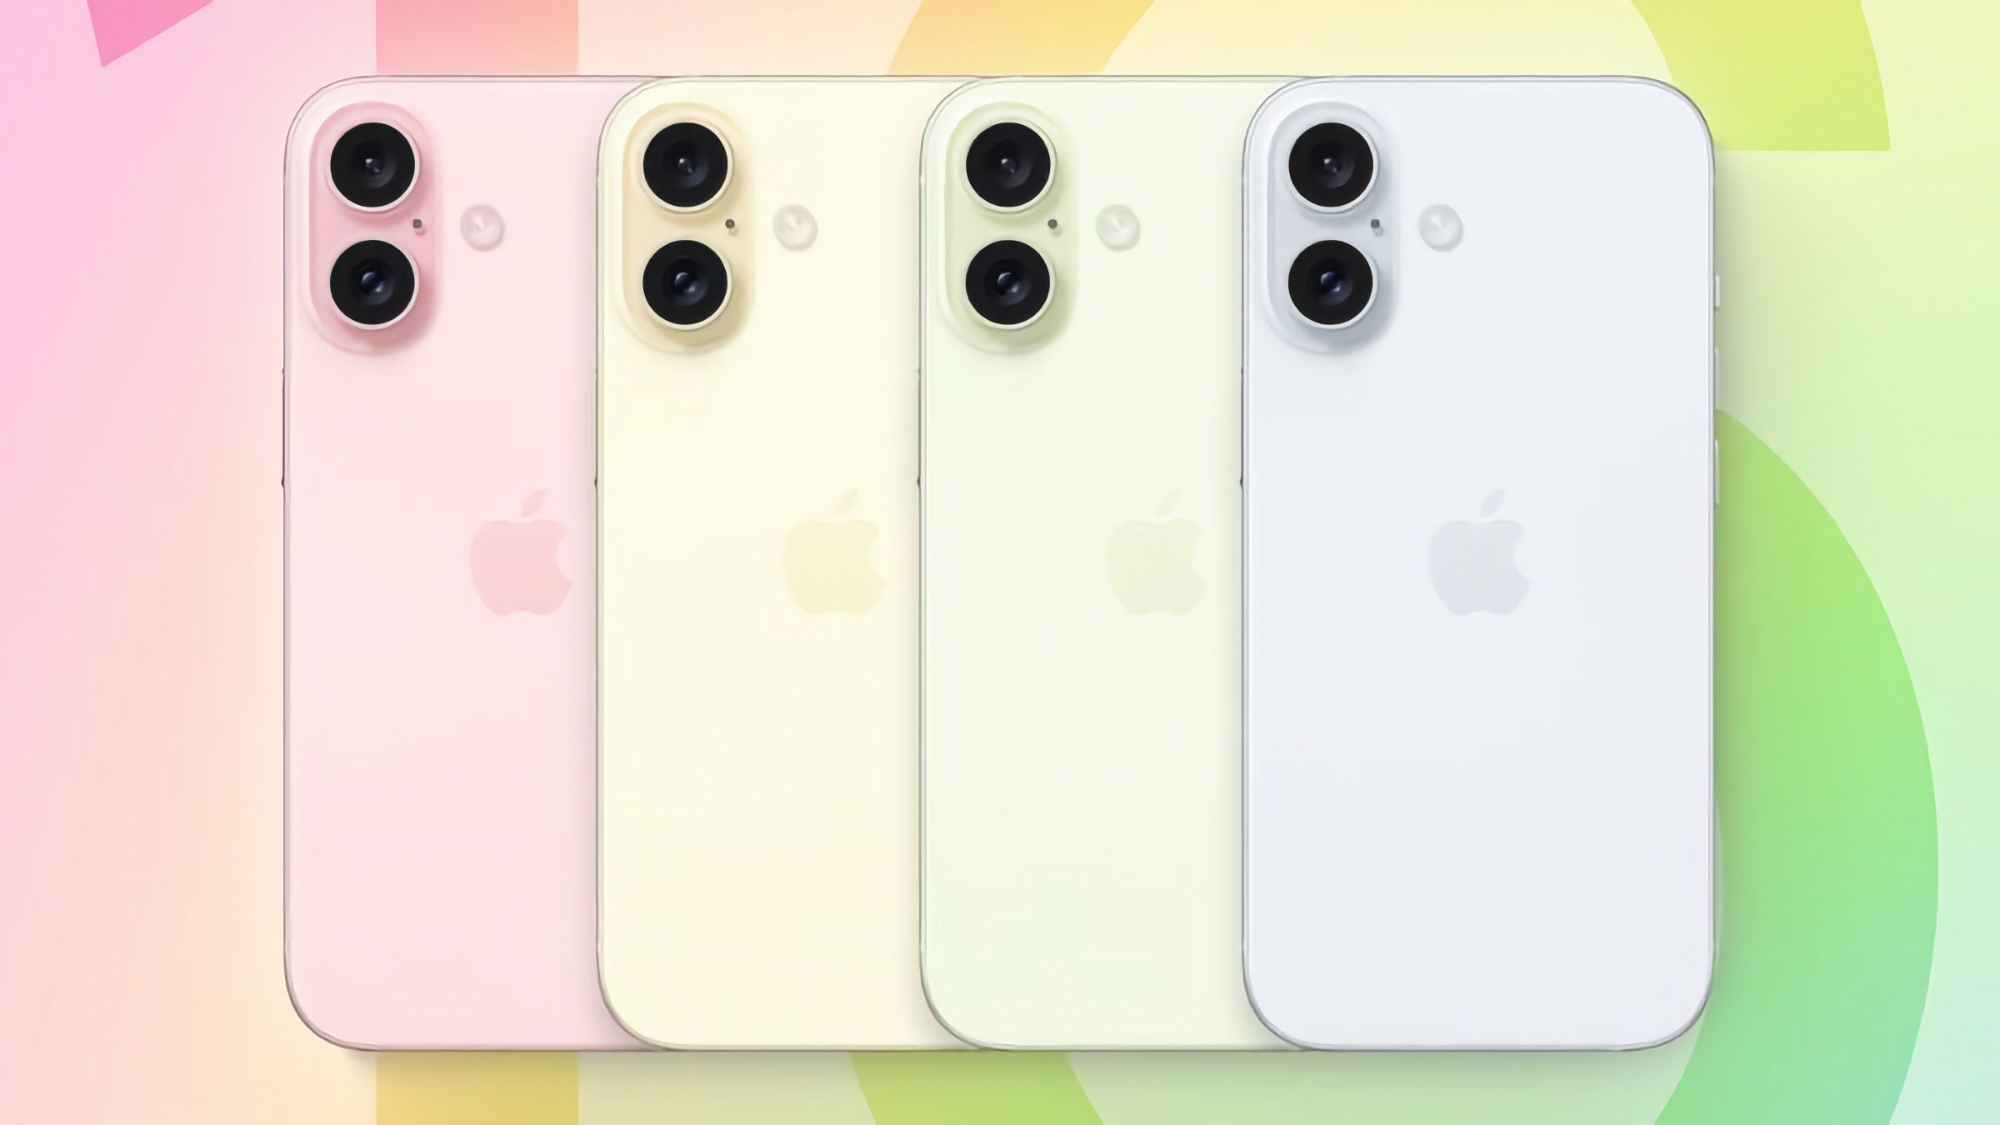 Apple testet einen Prototyp des iPhone 16 mit einer kleineren Kameraeinheit wie beim iPhone X